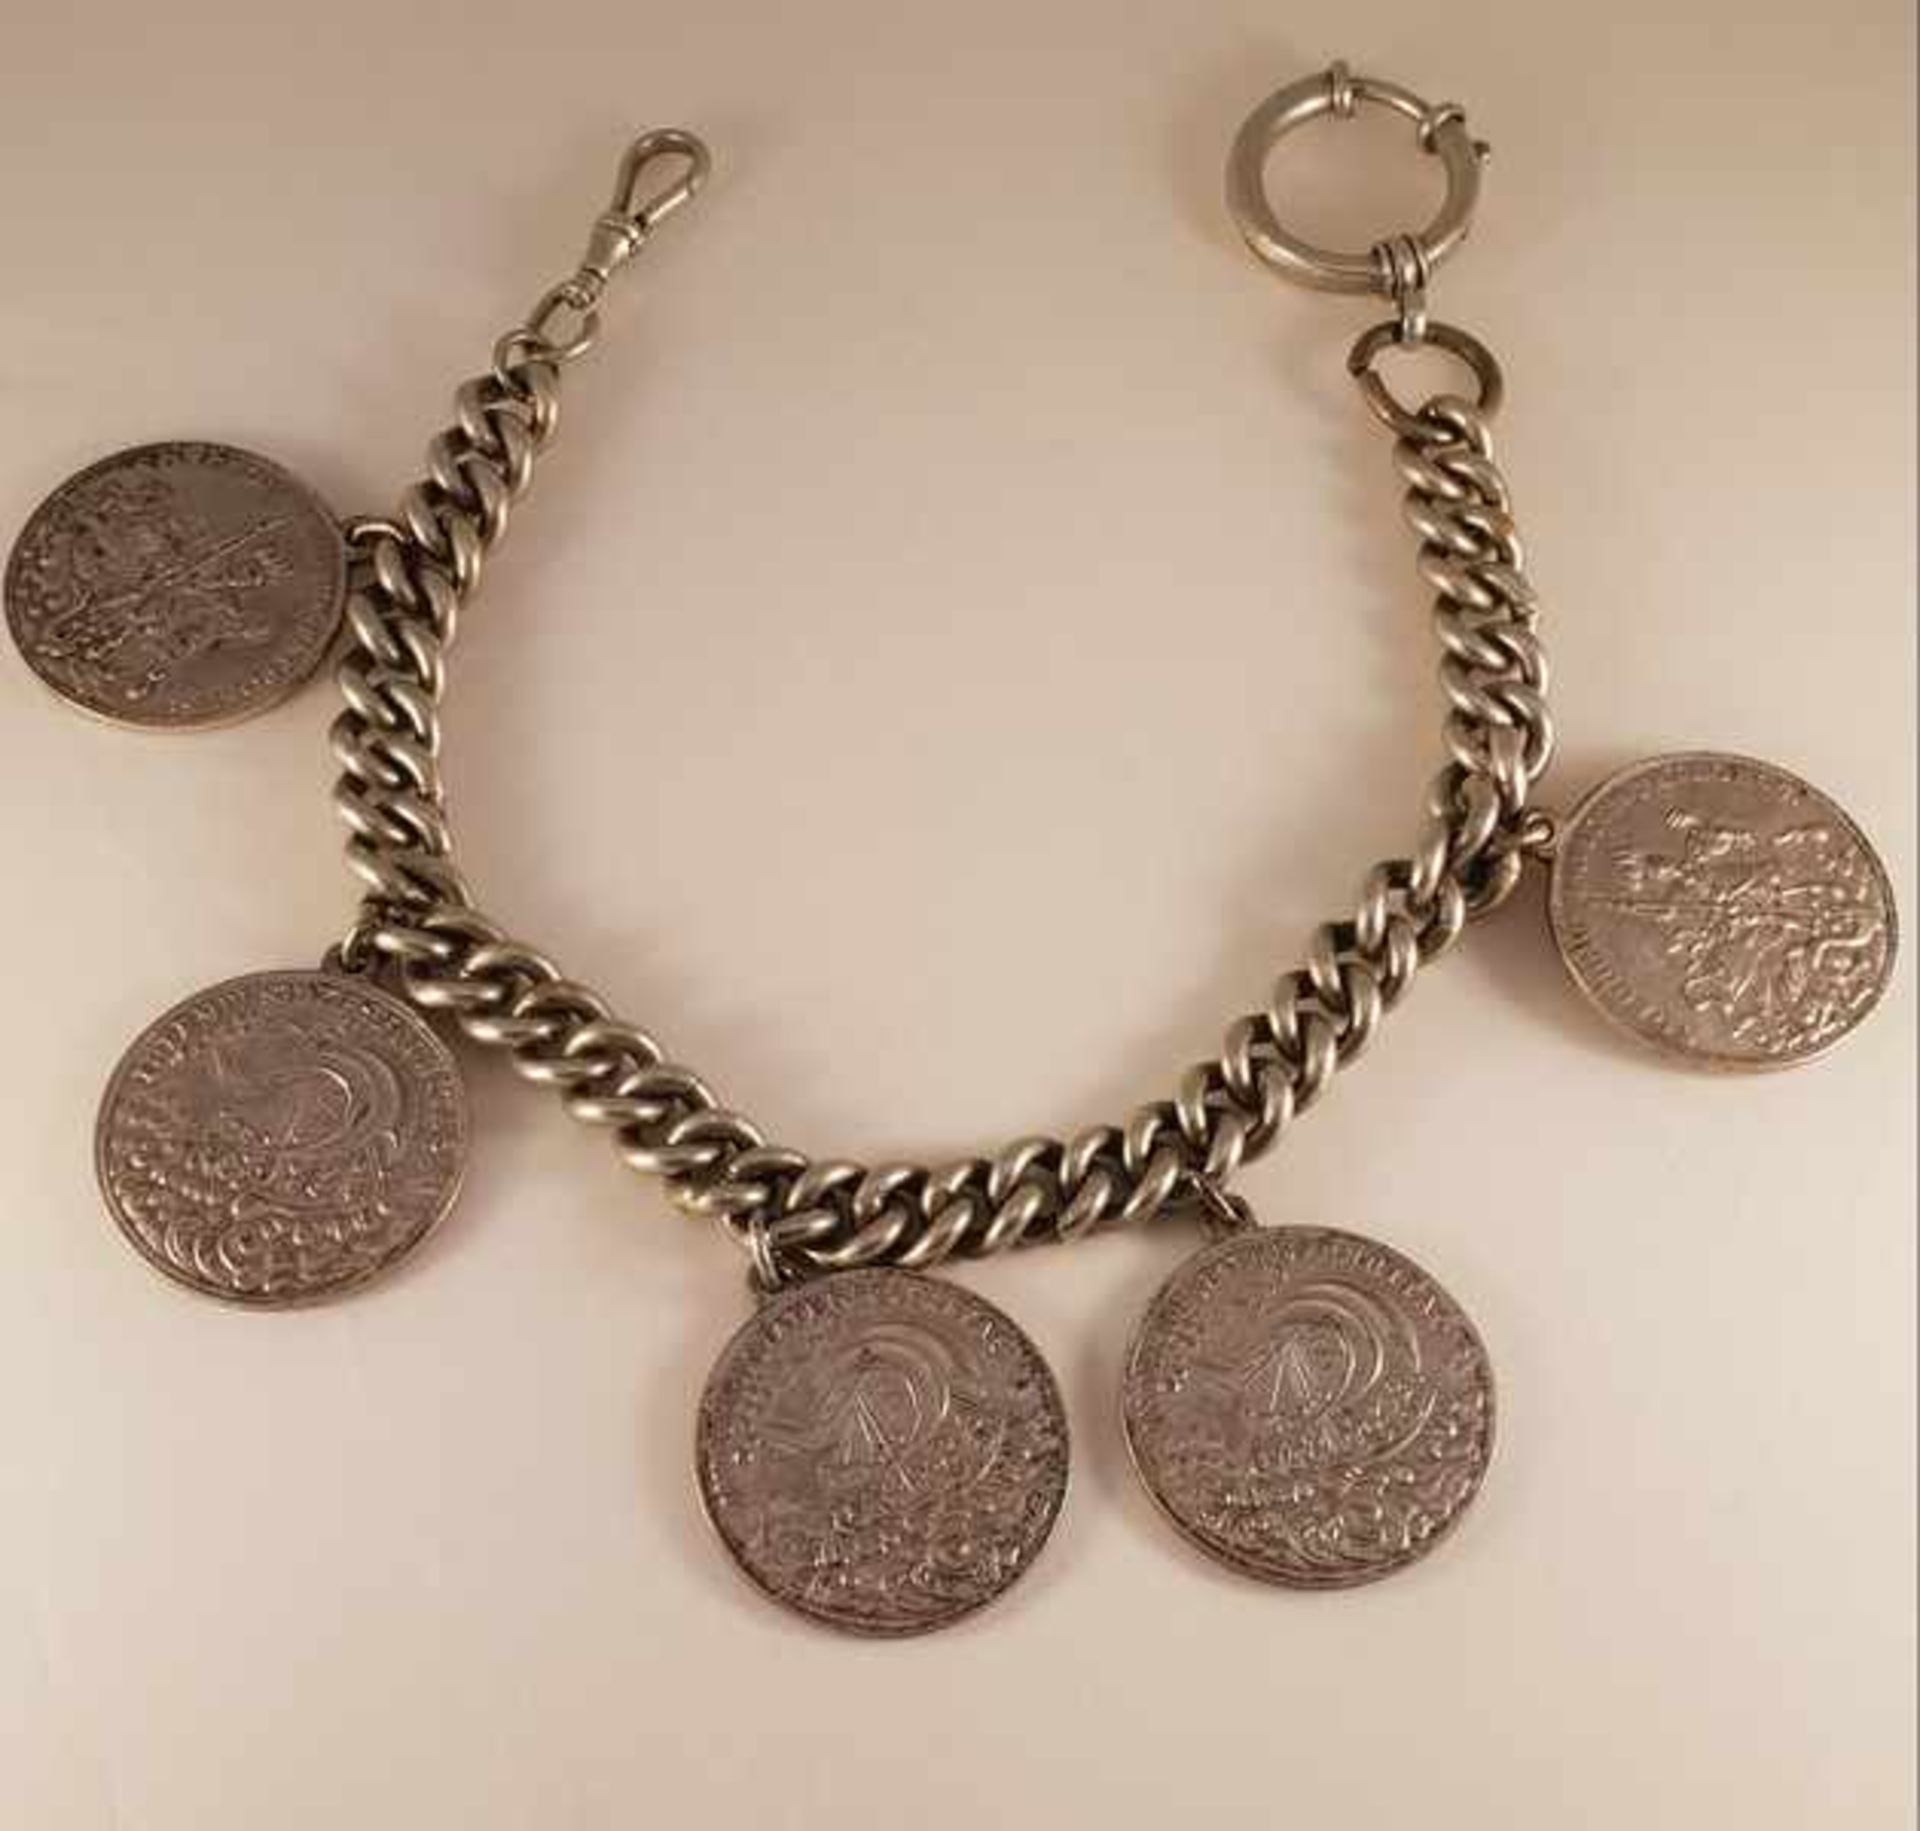 Münz-Chariva. , Metall unedel, mit 5 gleichen Münzen, Länge: 34cm, Münzen Durchmesser: 3,4cm ,